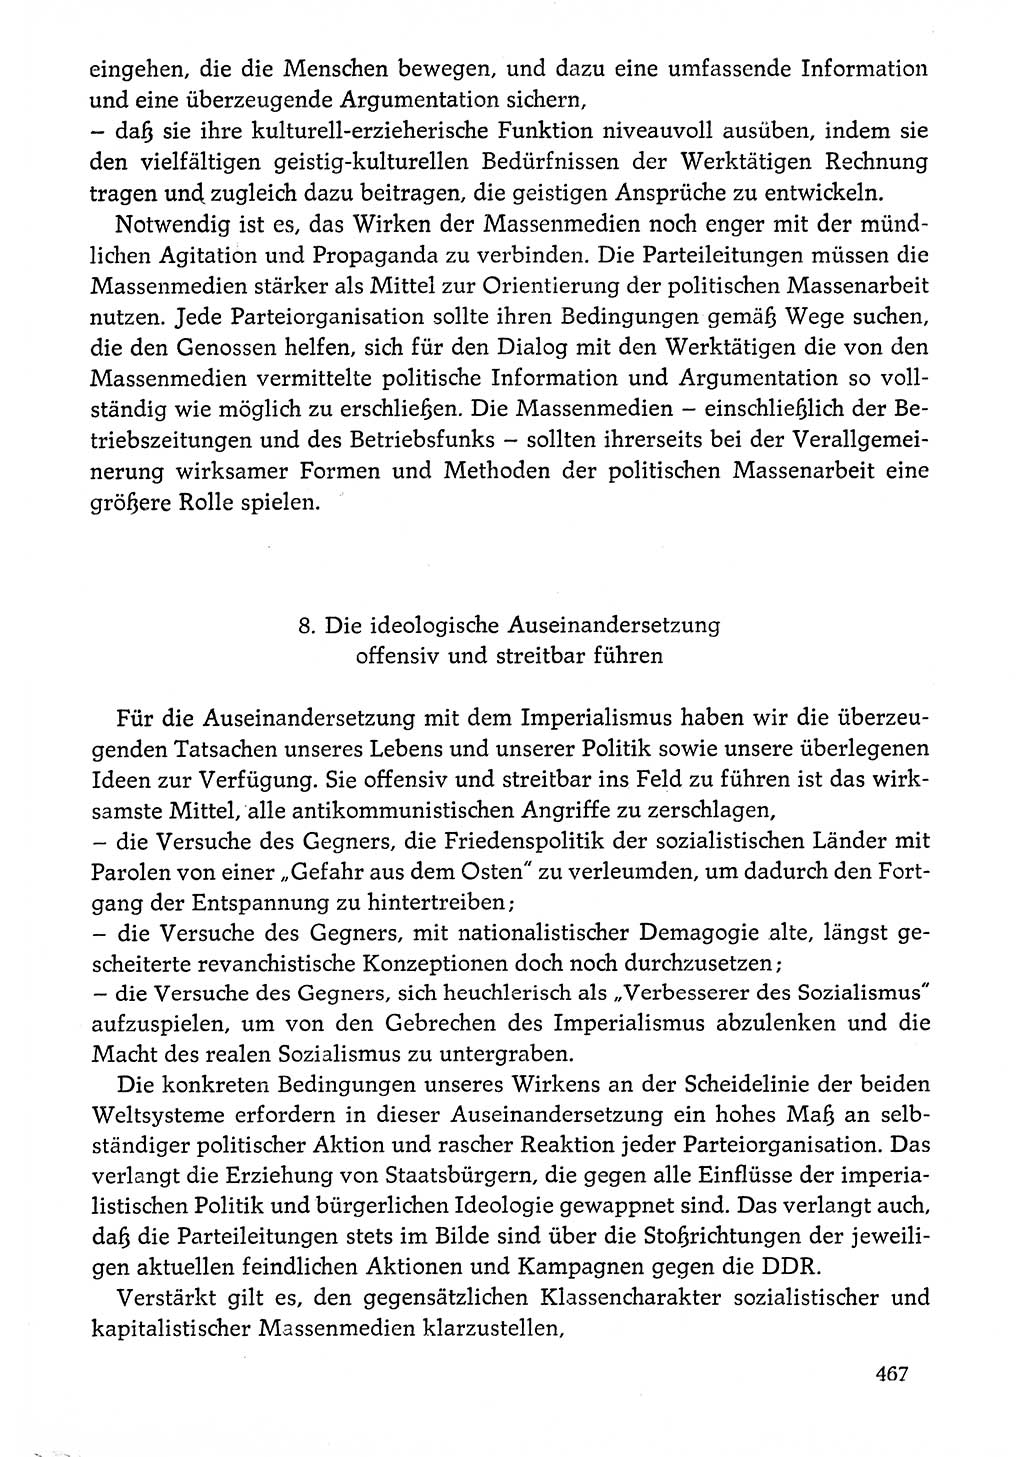 Dokumente der Sozialistischen Einheitspartei Deutschlands (SED) [Deutsche Demokratische Republik (DDR)] 1976-1977, Seite 467 (Dok. SED DDR 1976-1977, S. 467)